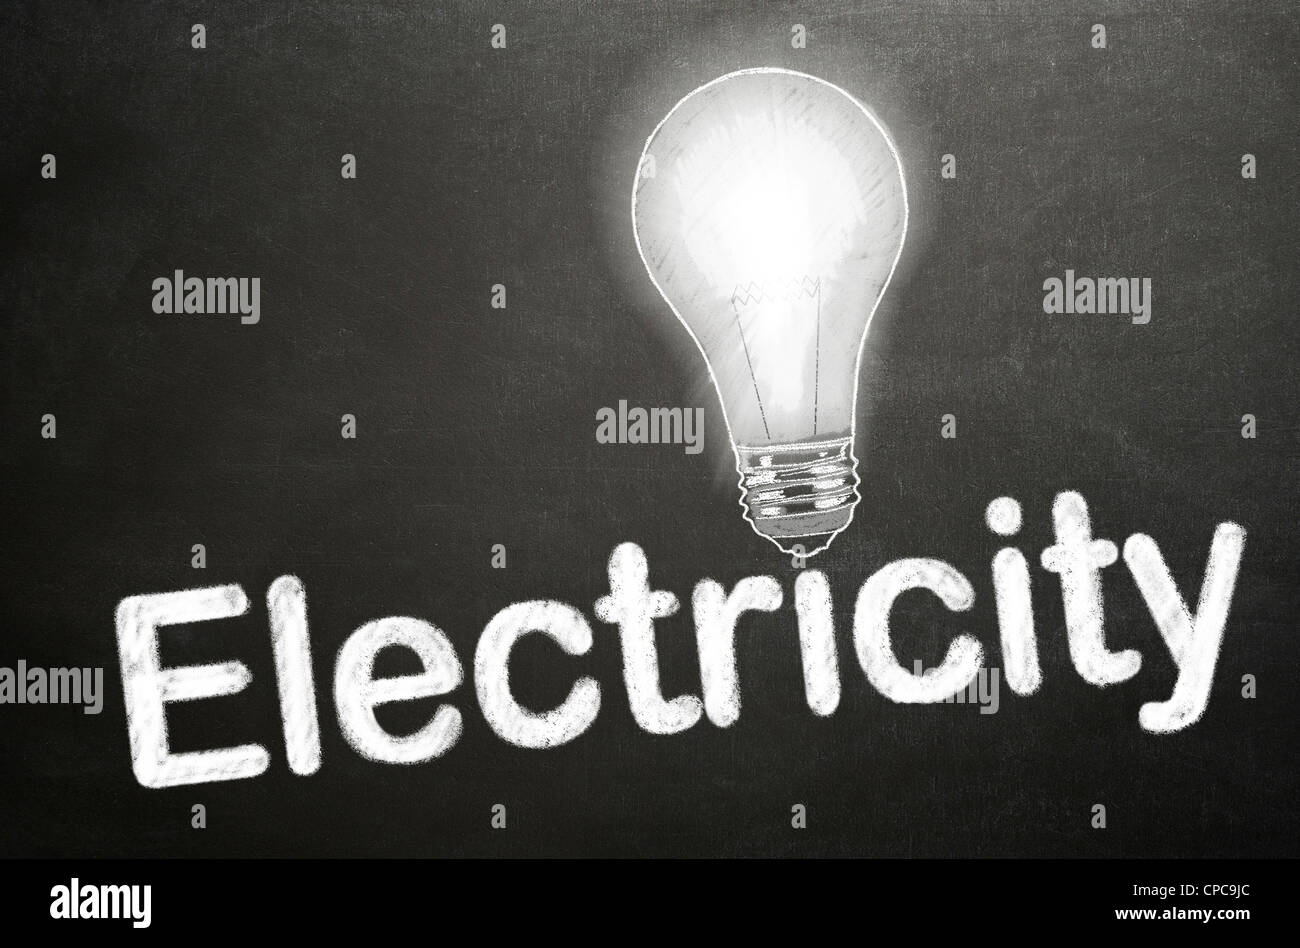 La palabra electricidad y una lámpara dibujado en una pizarra de tiza blanca - concepto Foto de stock